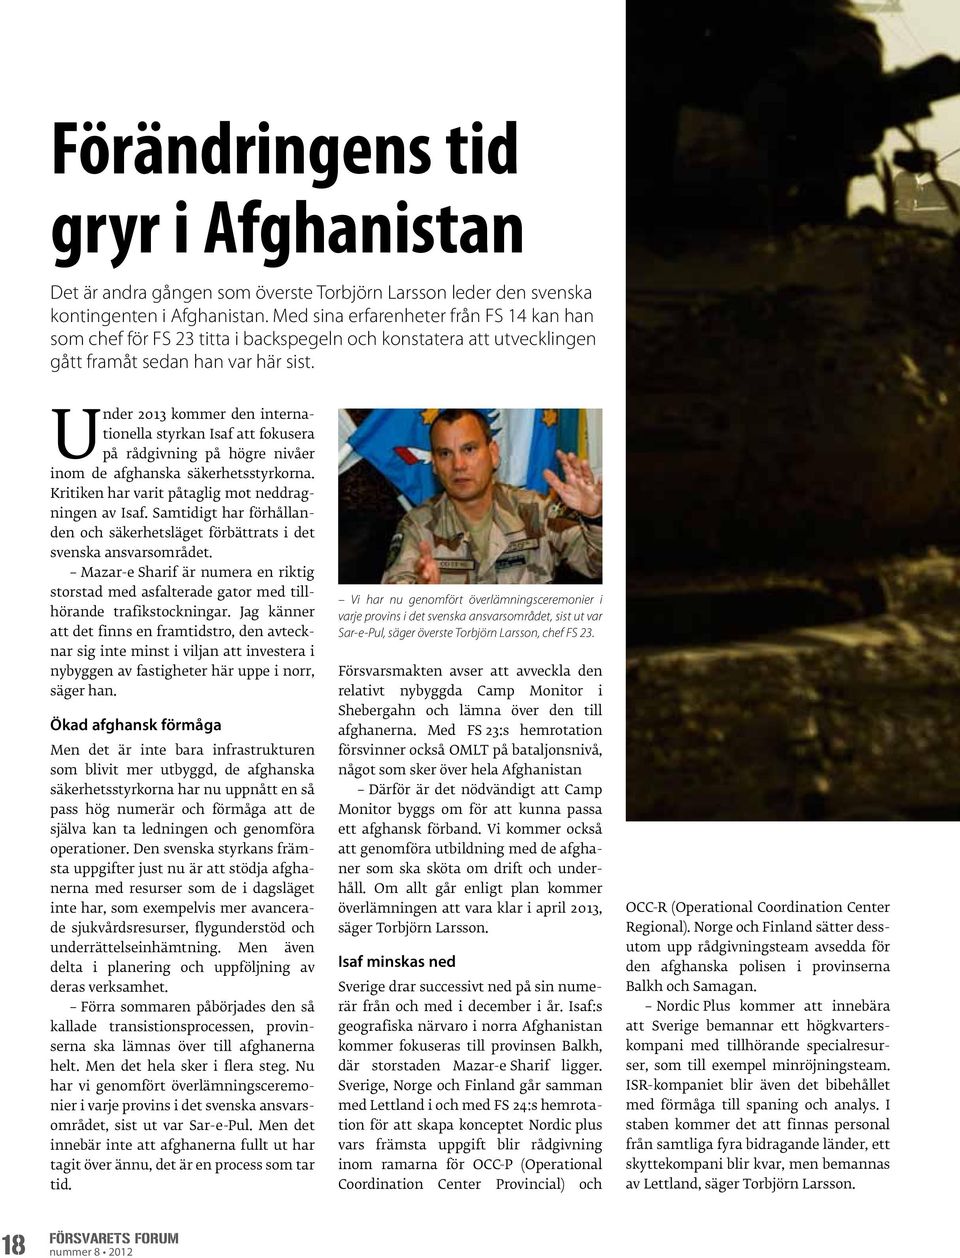 Under 2013 kommer den internationella styrkan Isaf att fokusera på rådgivning på högre nivåer inom de afghanska säkerhetsstyrkorna. Kritiken har varit påtaglig mot neddragningen av Isaf.